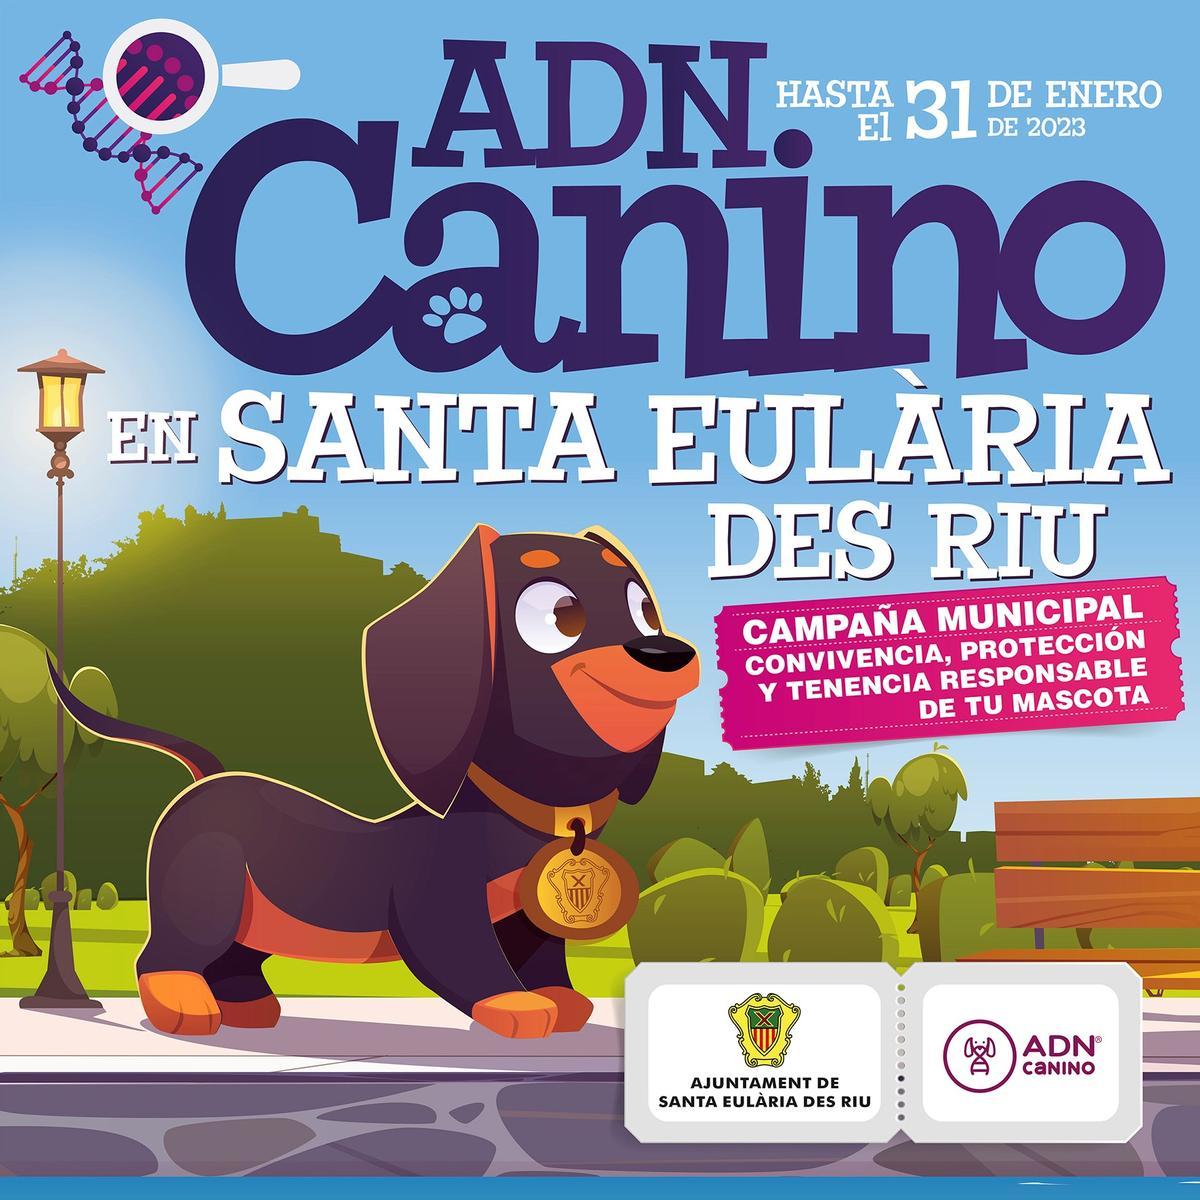 El cartel de Santa Eulària para la campaña canina municipal